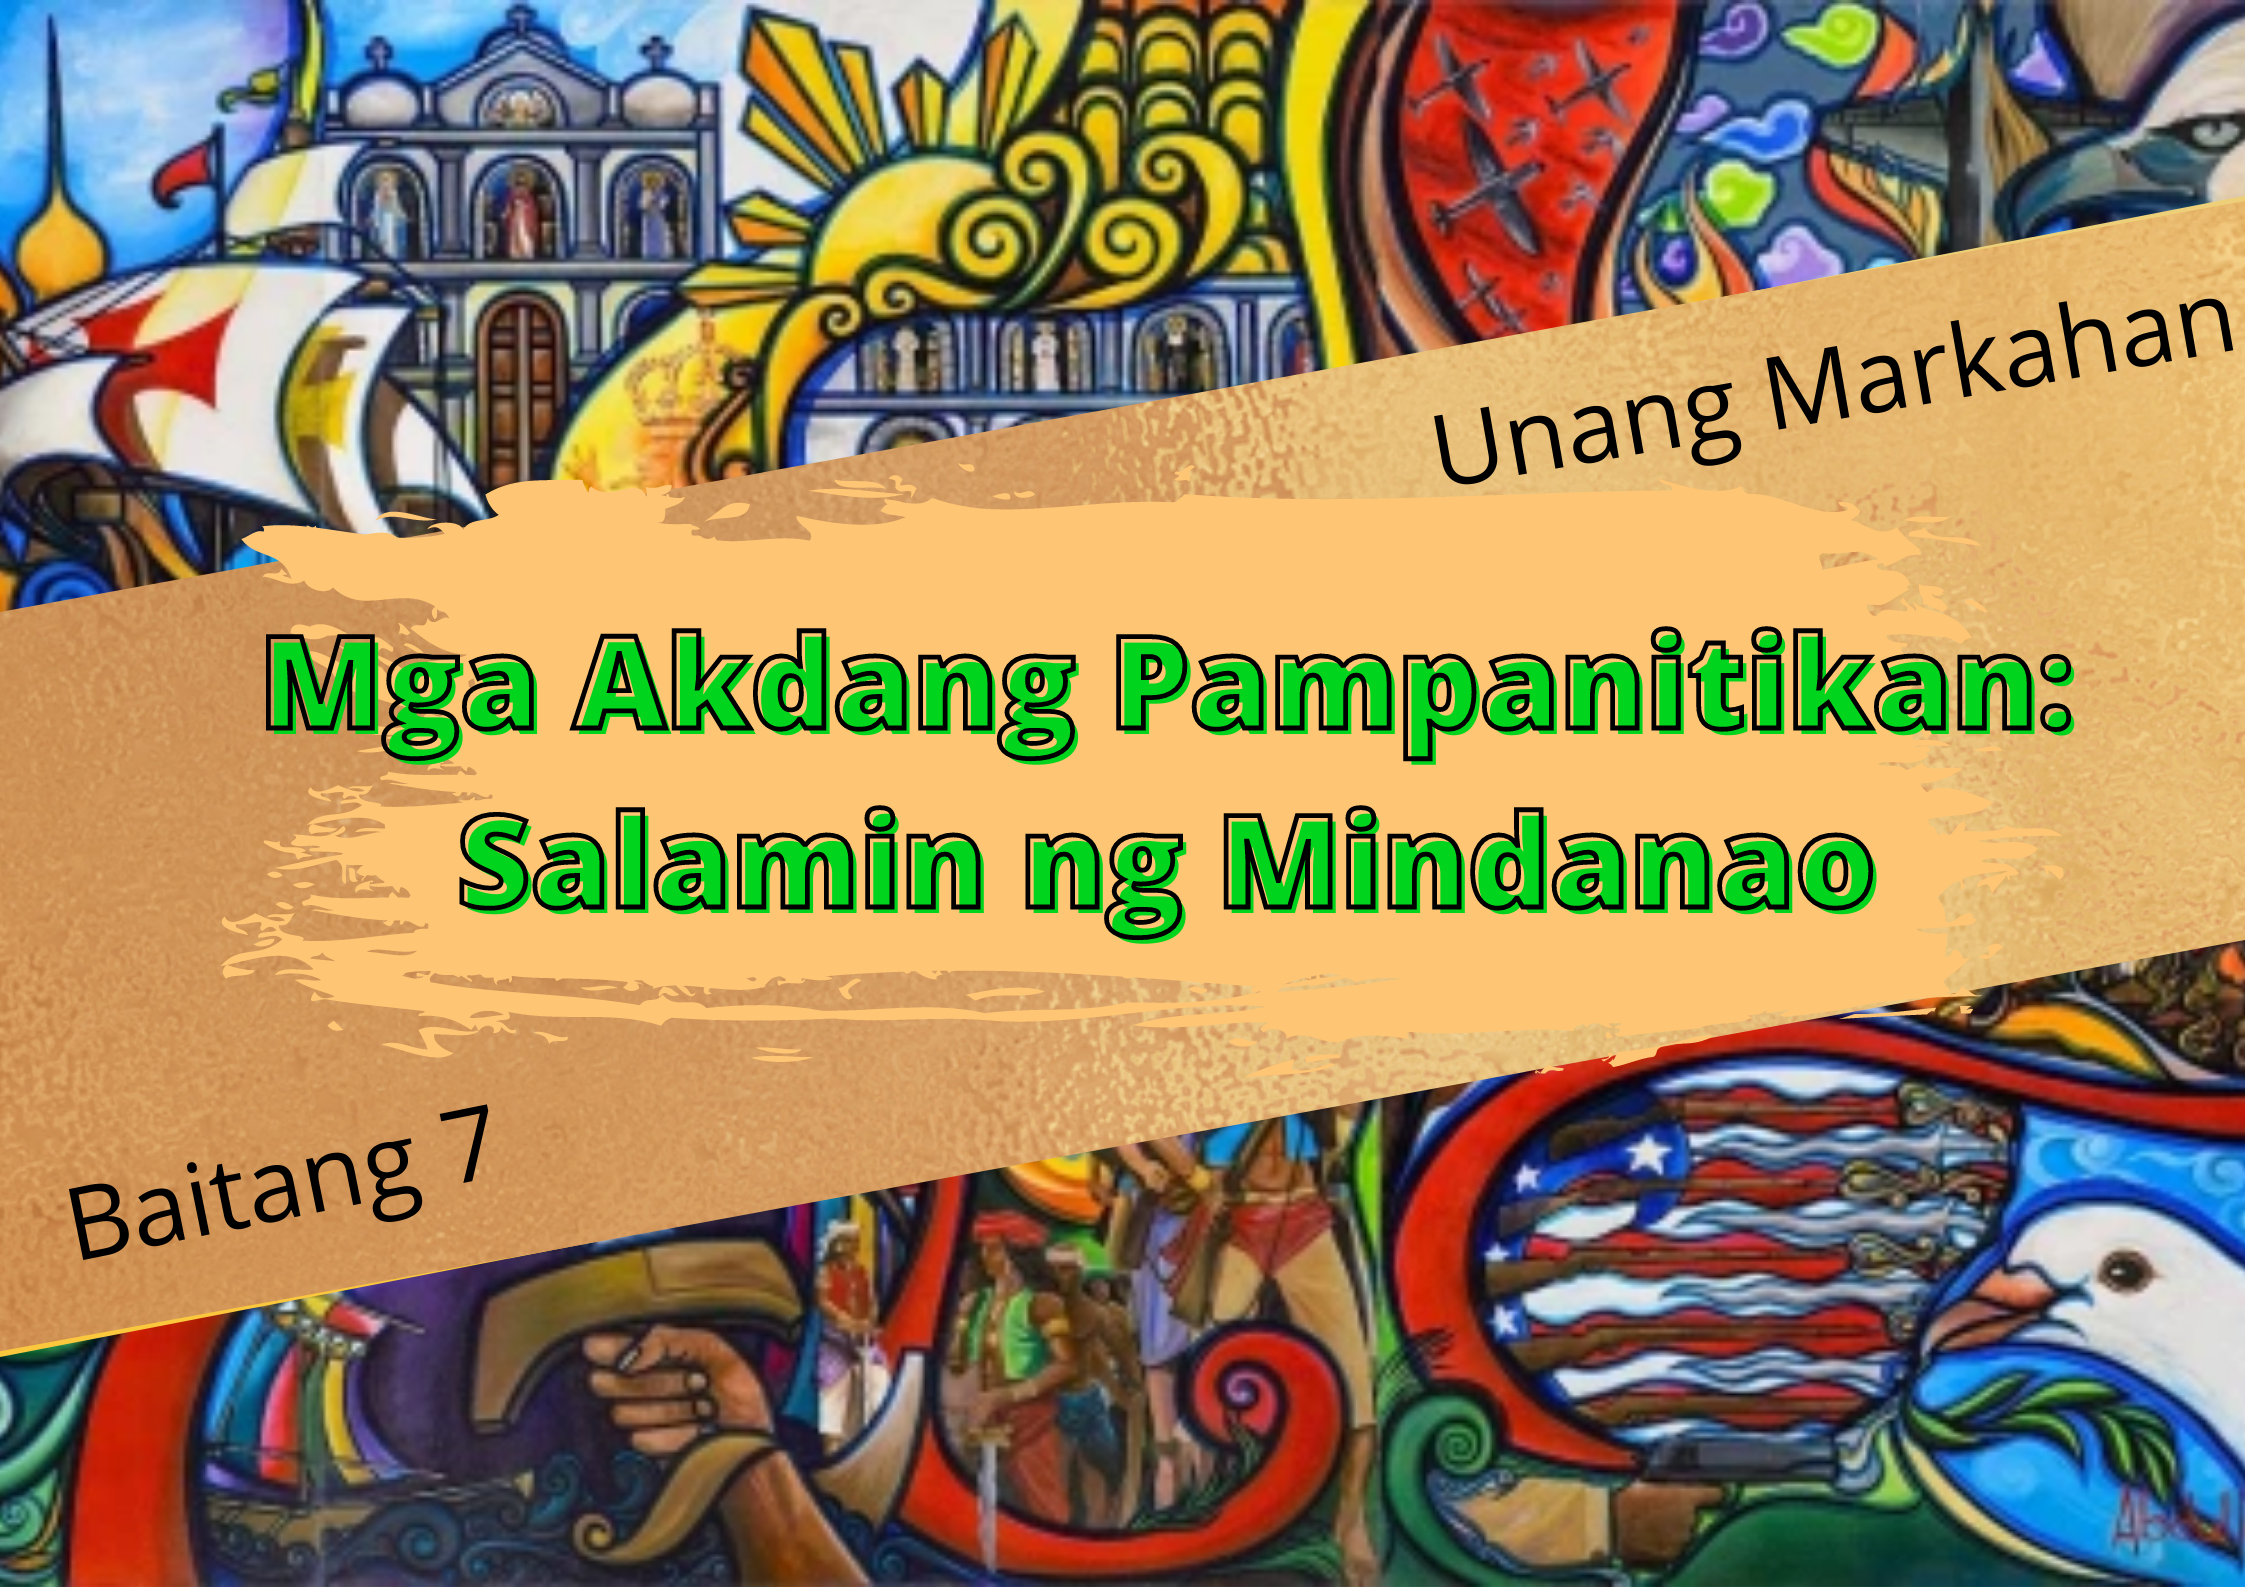 Mga Akdang Pampanitikan: Salamin ng Mindanao